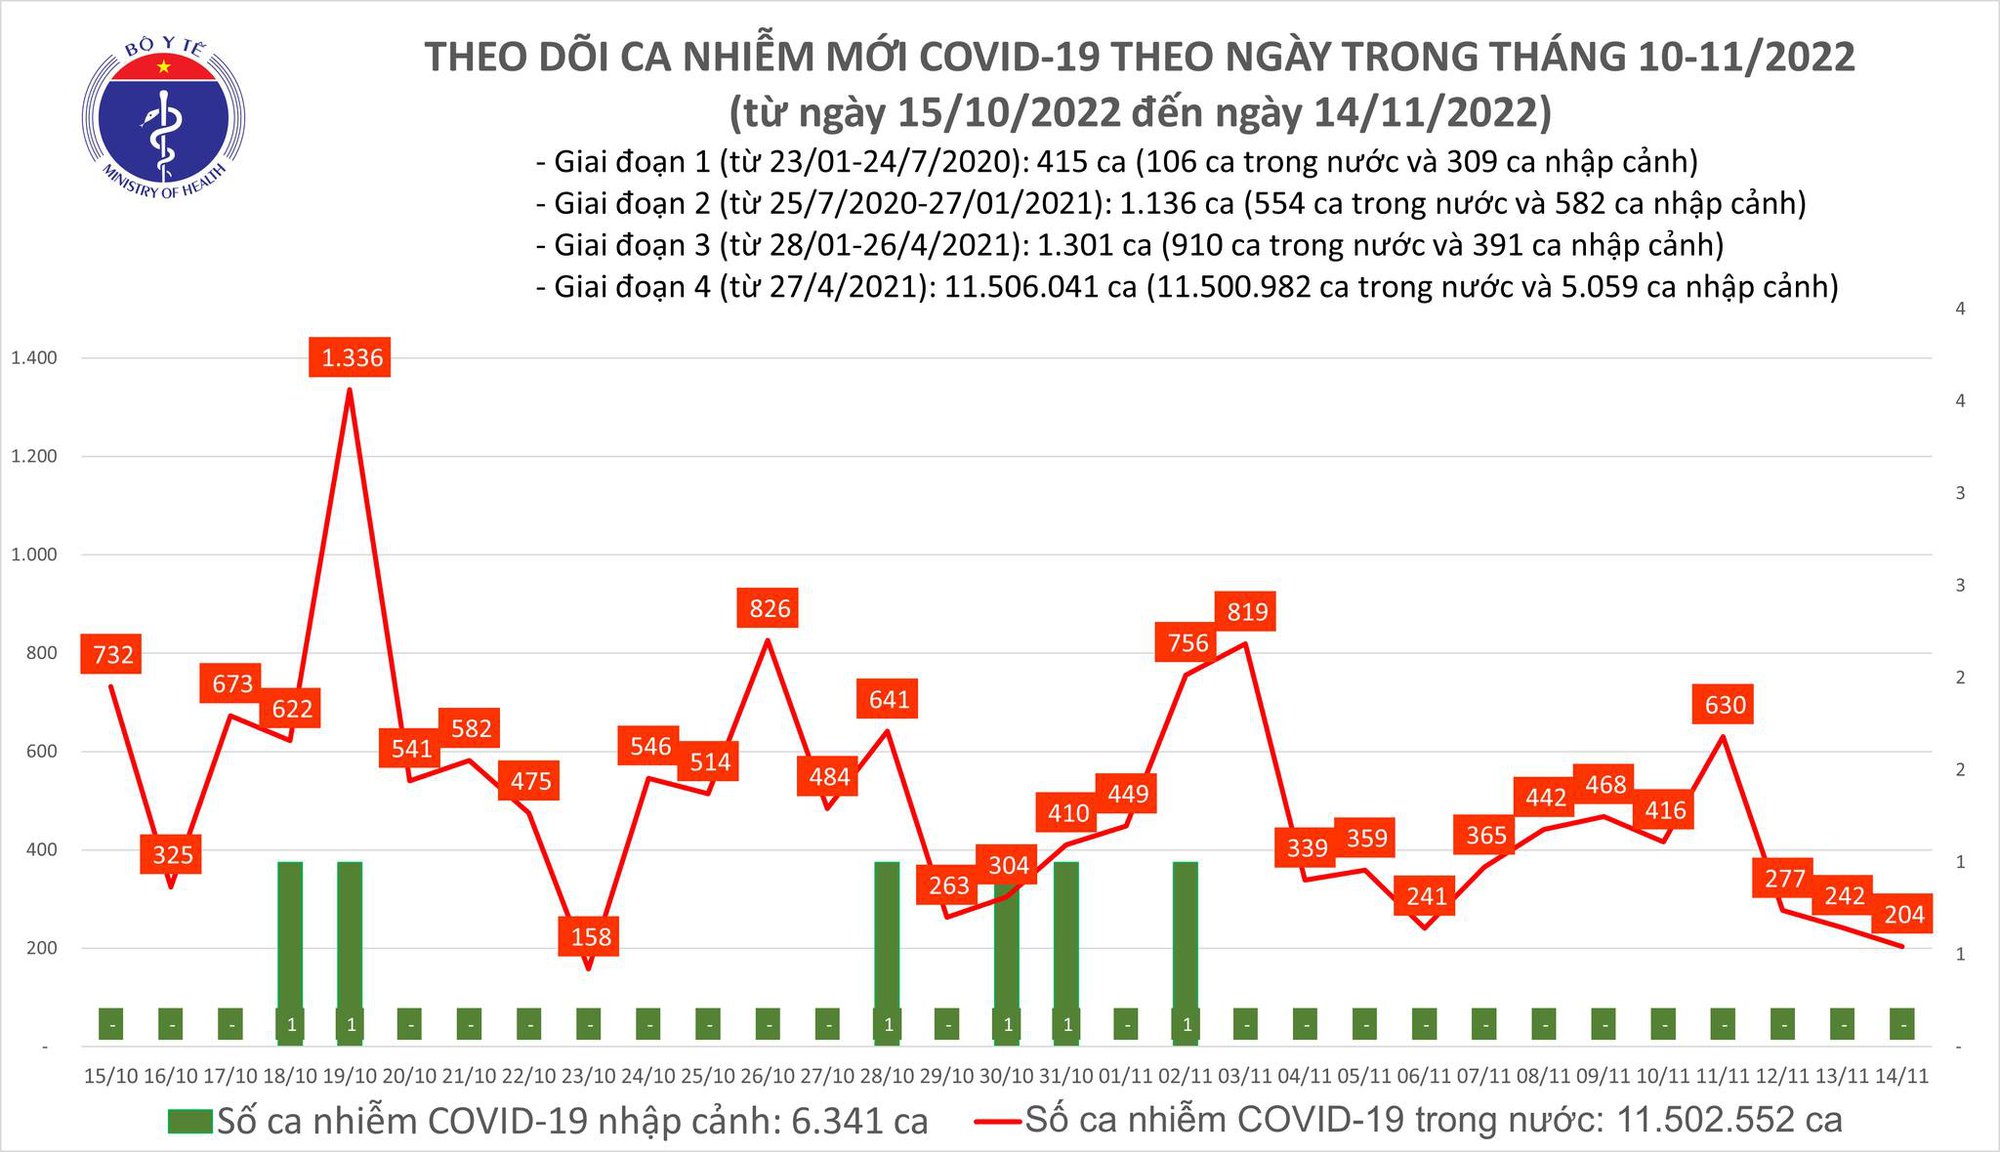 Ngày 14/11: Có 204 ca COVID-19, thấp nhất trong gần 1 tháng qua - Ảnh 1.